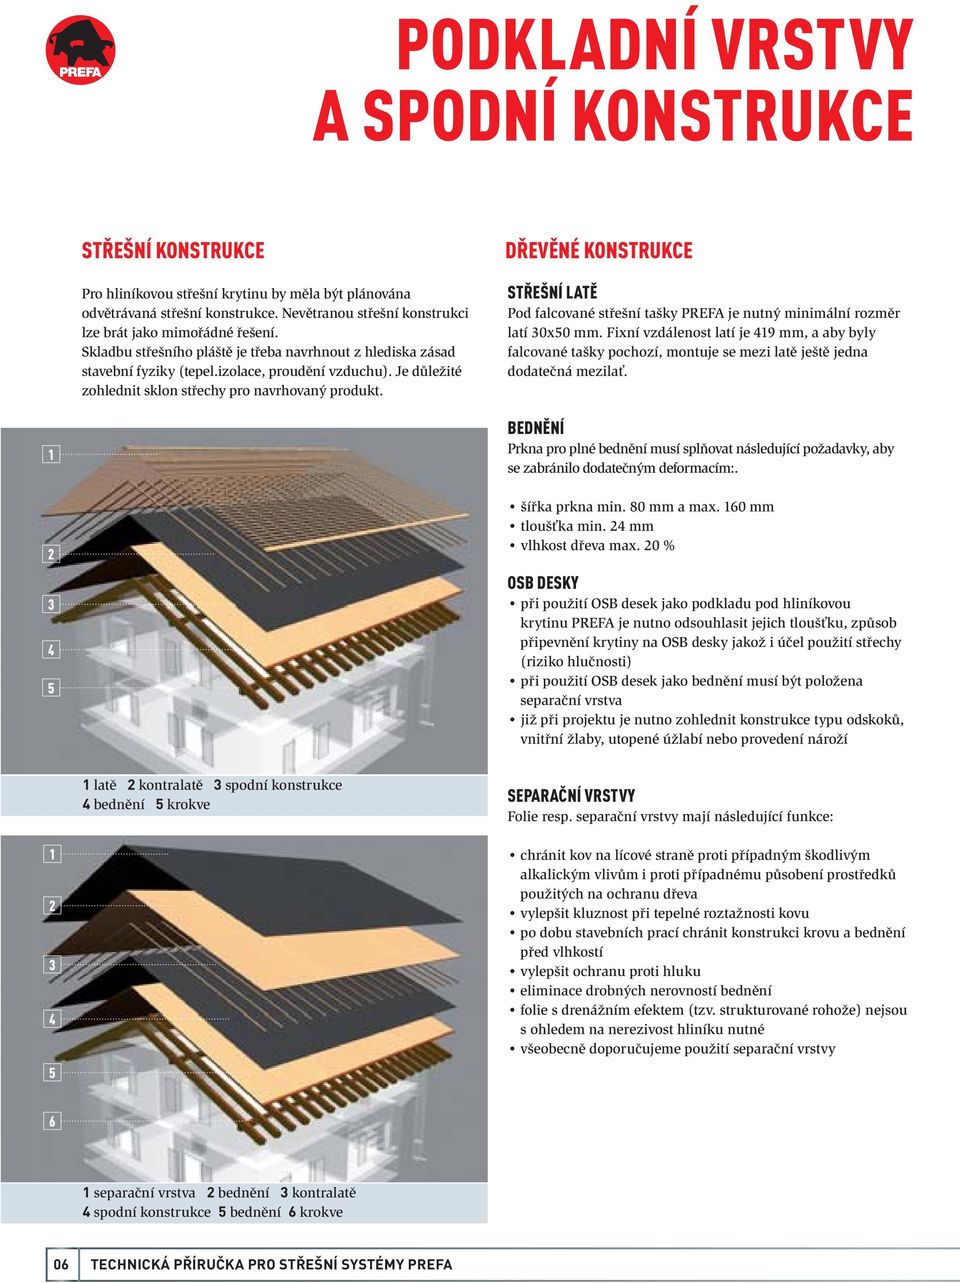 Je důležité zohlednit sklon střechy pro navrhovaný produkt. DŘEVĚNÉ KONSTRUKCE STŘEŠNÍ LATĚ Pod falcované střešní tašky PREFA je nutný minimální rozměr latí 0x0 mm.